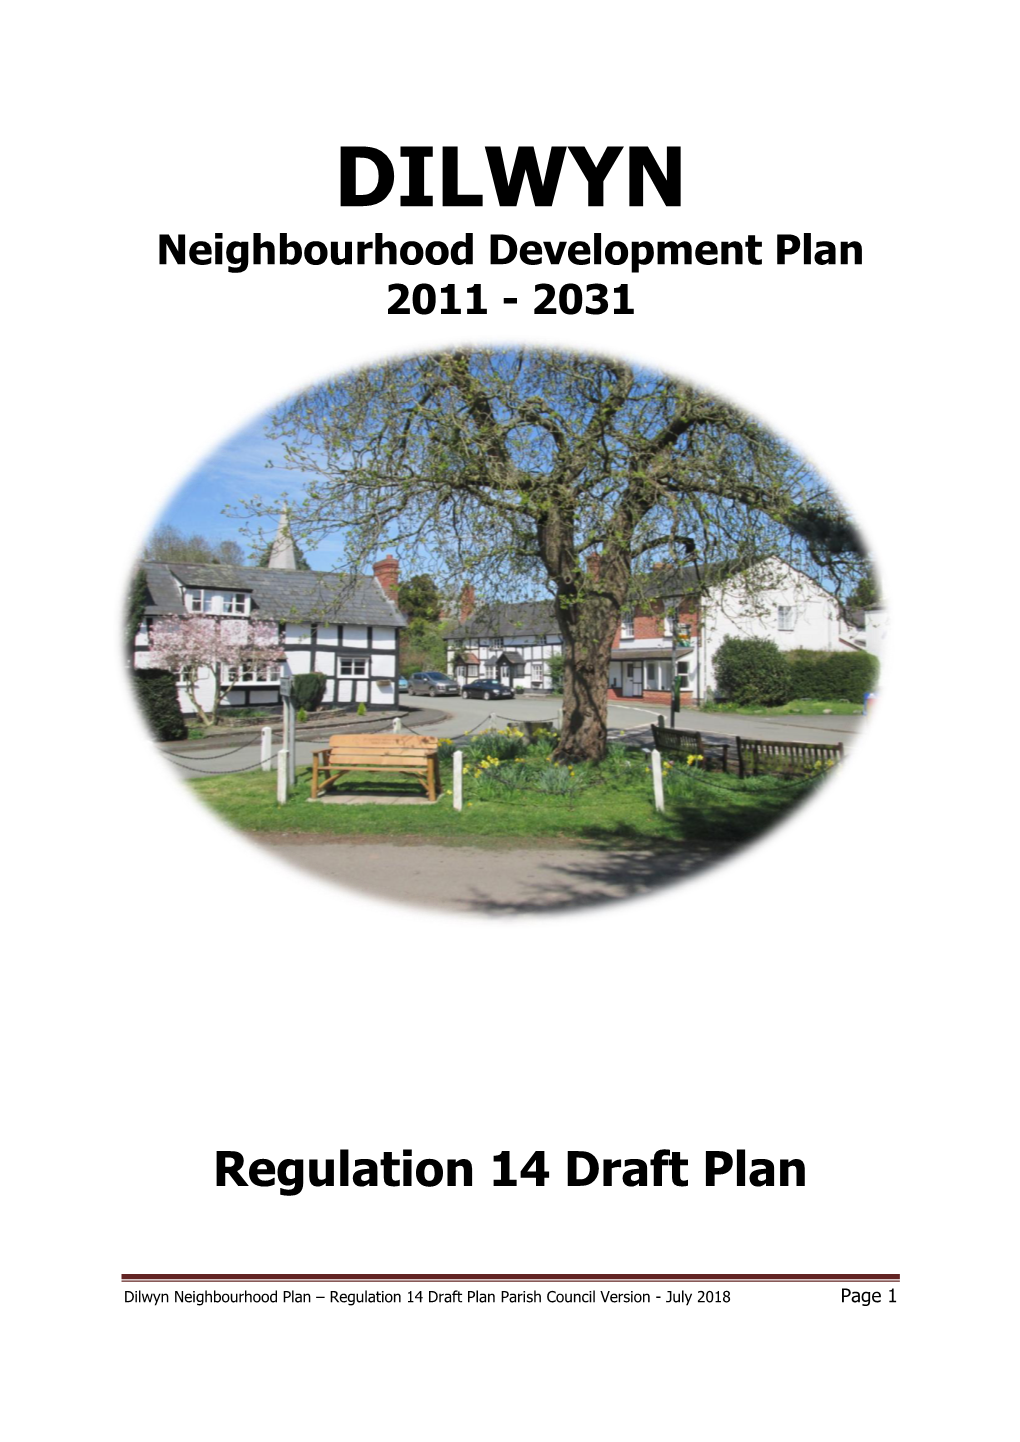 Draft Neighbourhood Development Plan